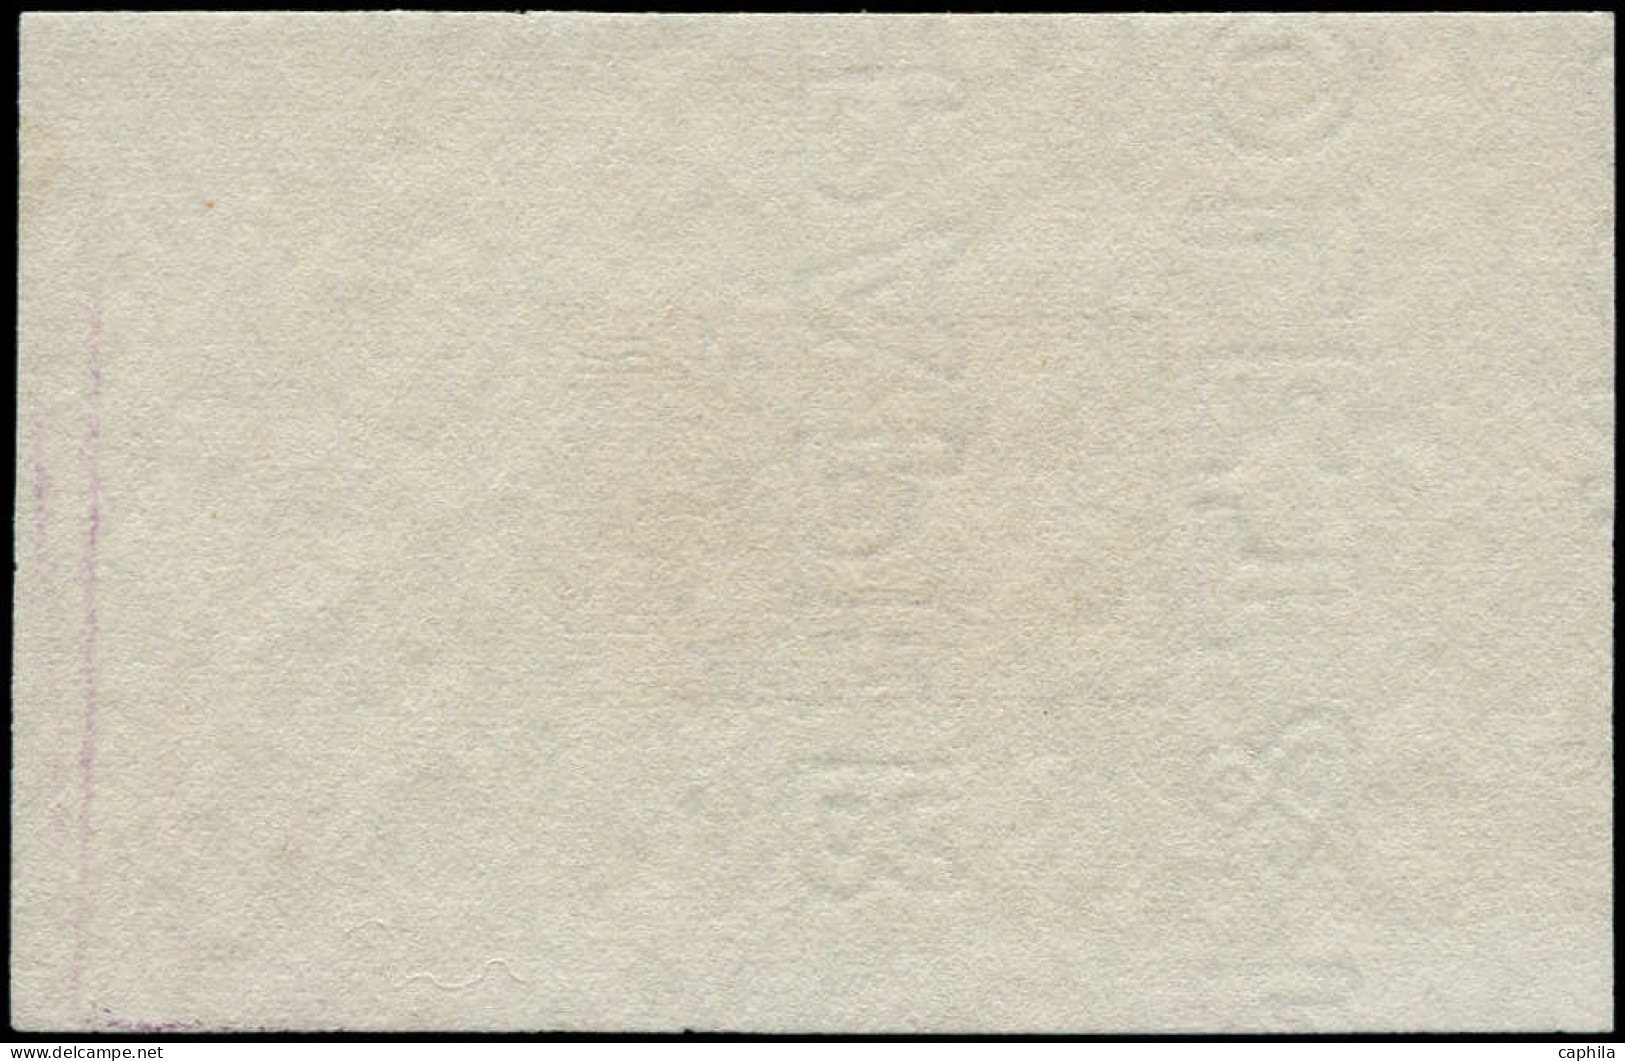 EPA COTE DES SOMALIS - Poste - 155, épreuve En Violet, Sans La Faciale, Type Guerrier - Unused Stamps